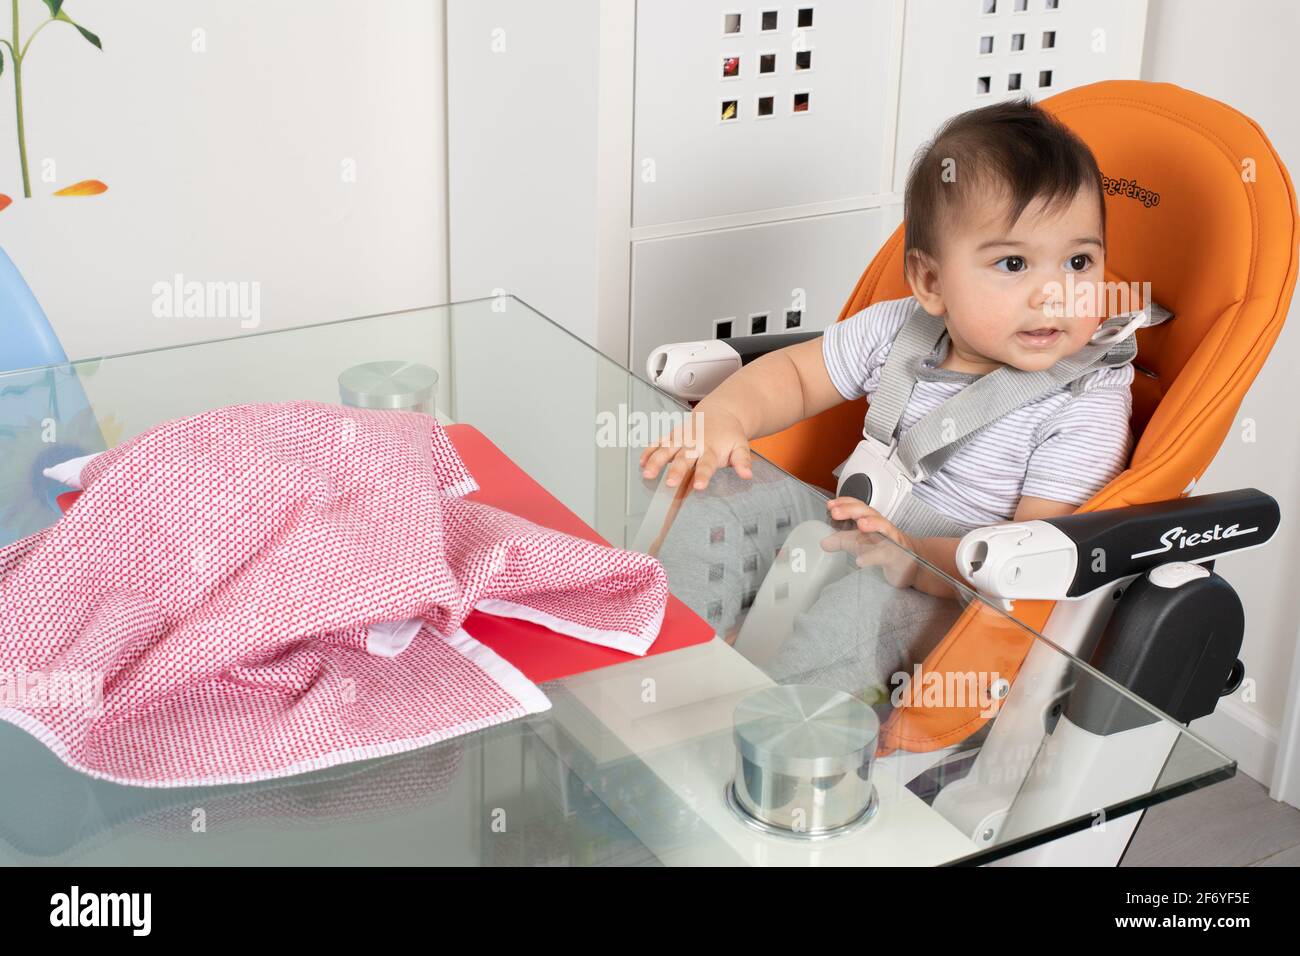 bébé garçon de 8 mois assis sur une chaise haute à Table Piaget séquence de permanence d'objet #2 regarder loin après le jouet est caché par le tissu manque de perm d'objet Banque D'Images